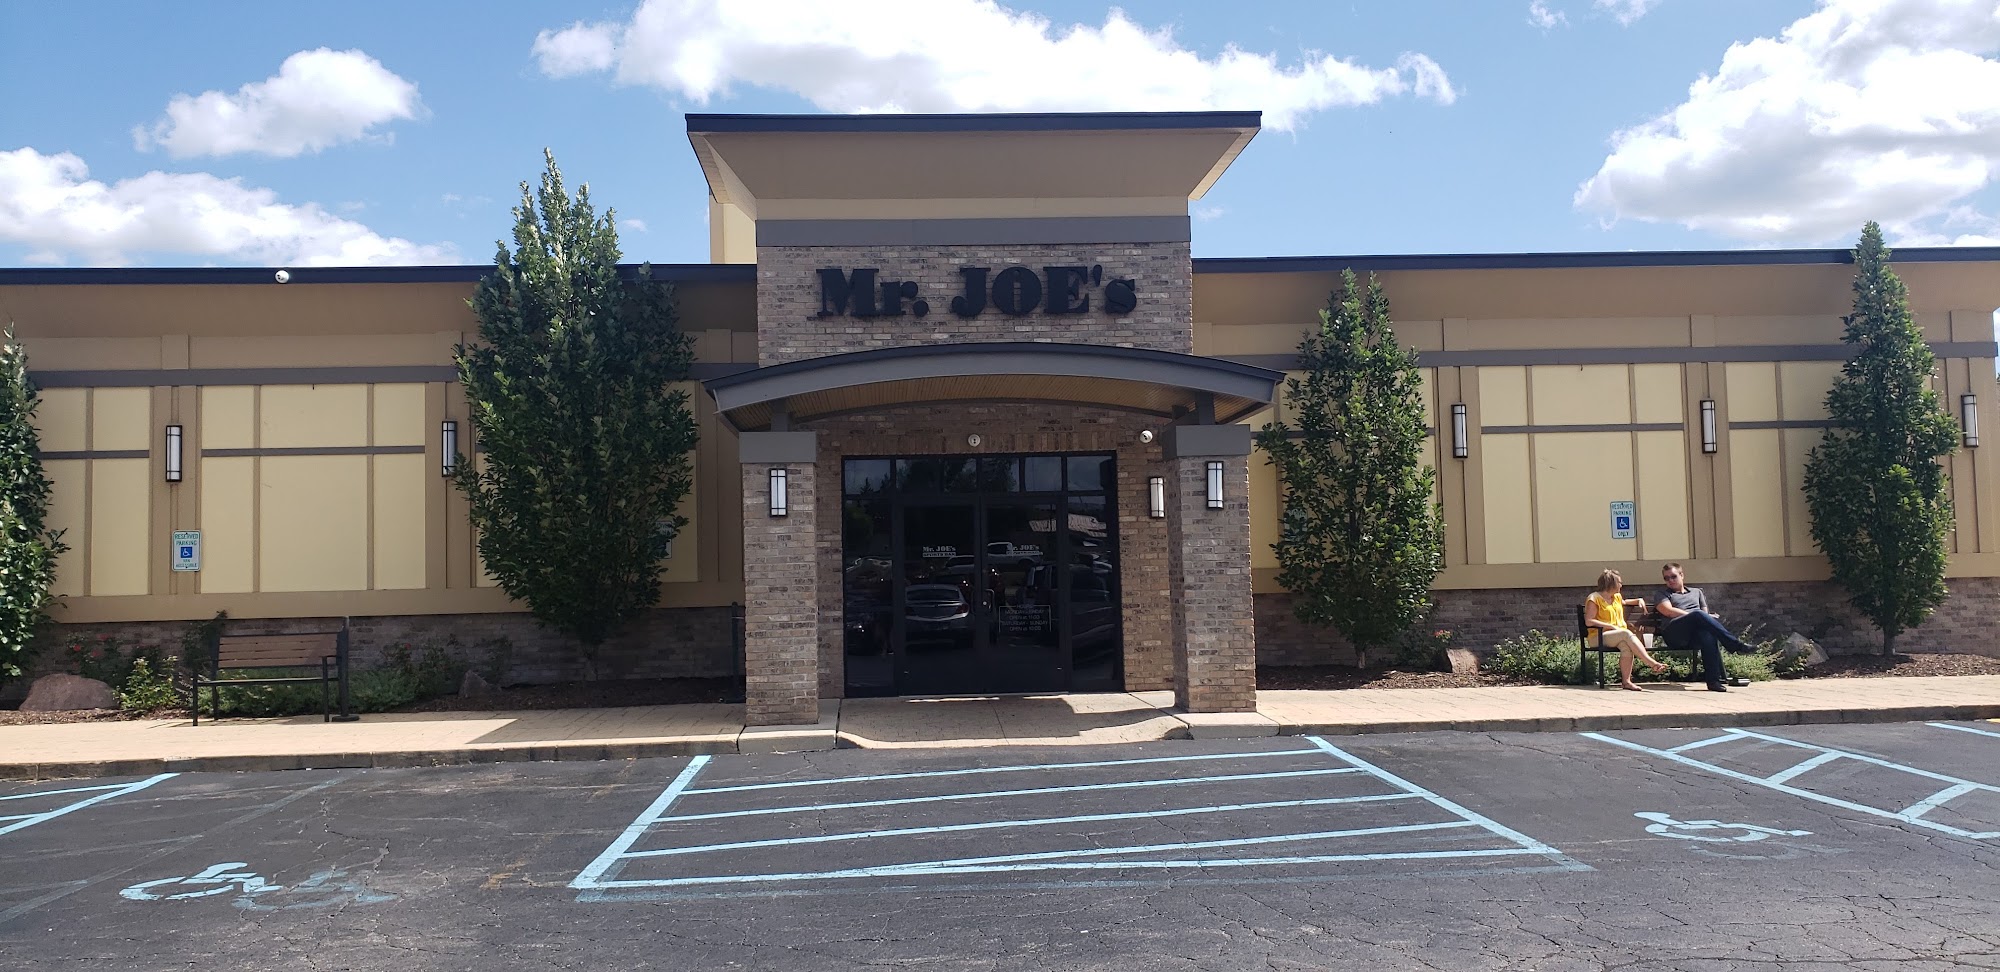 Mr. Joe's Sports Bar and Grill